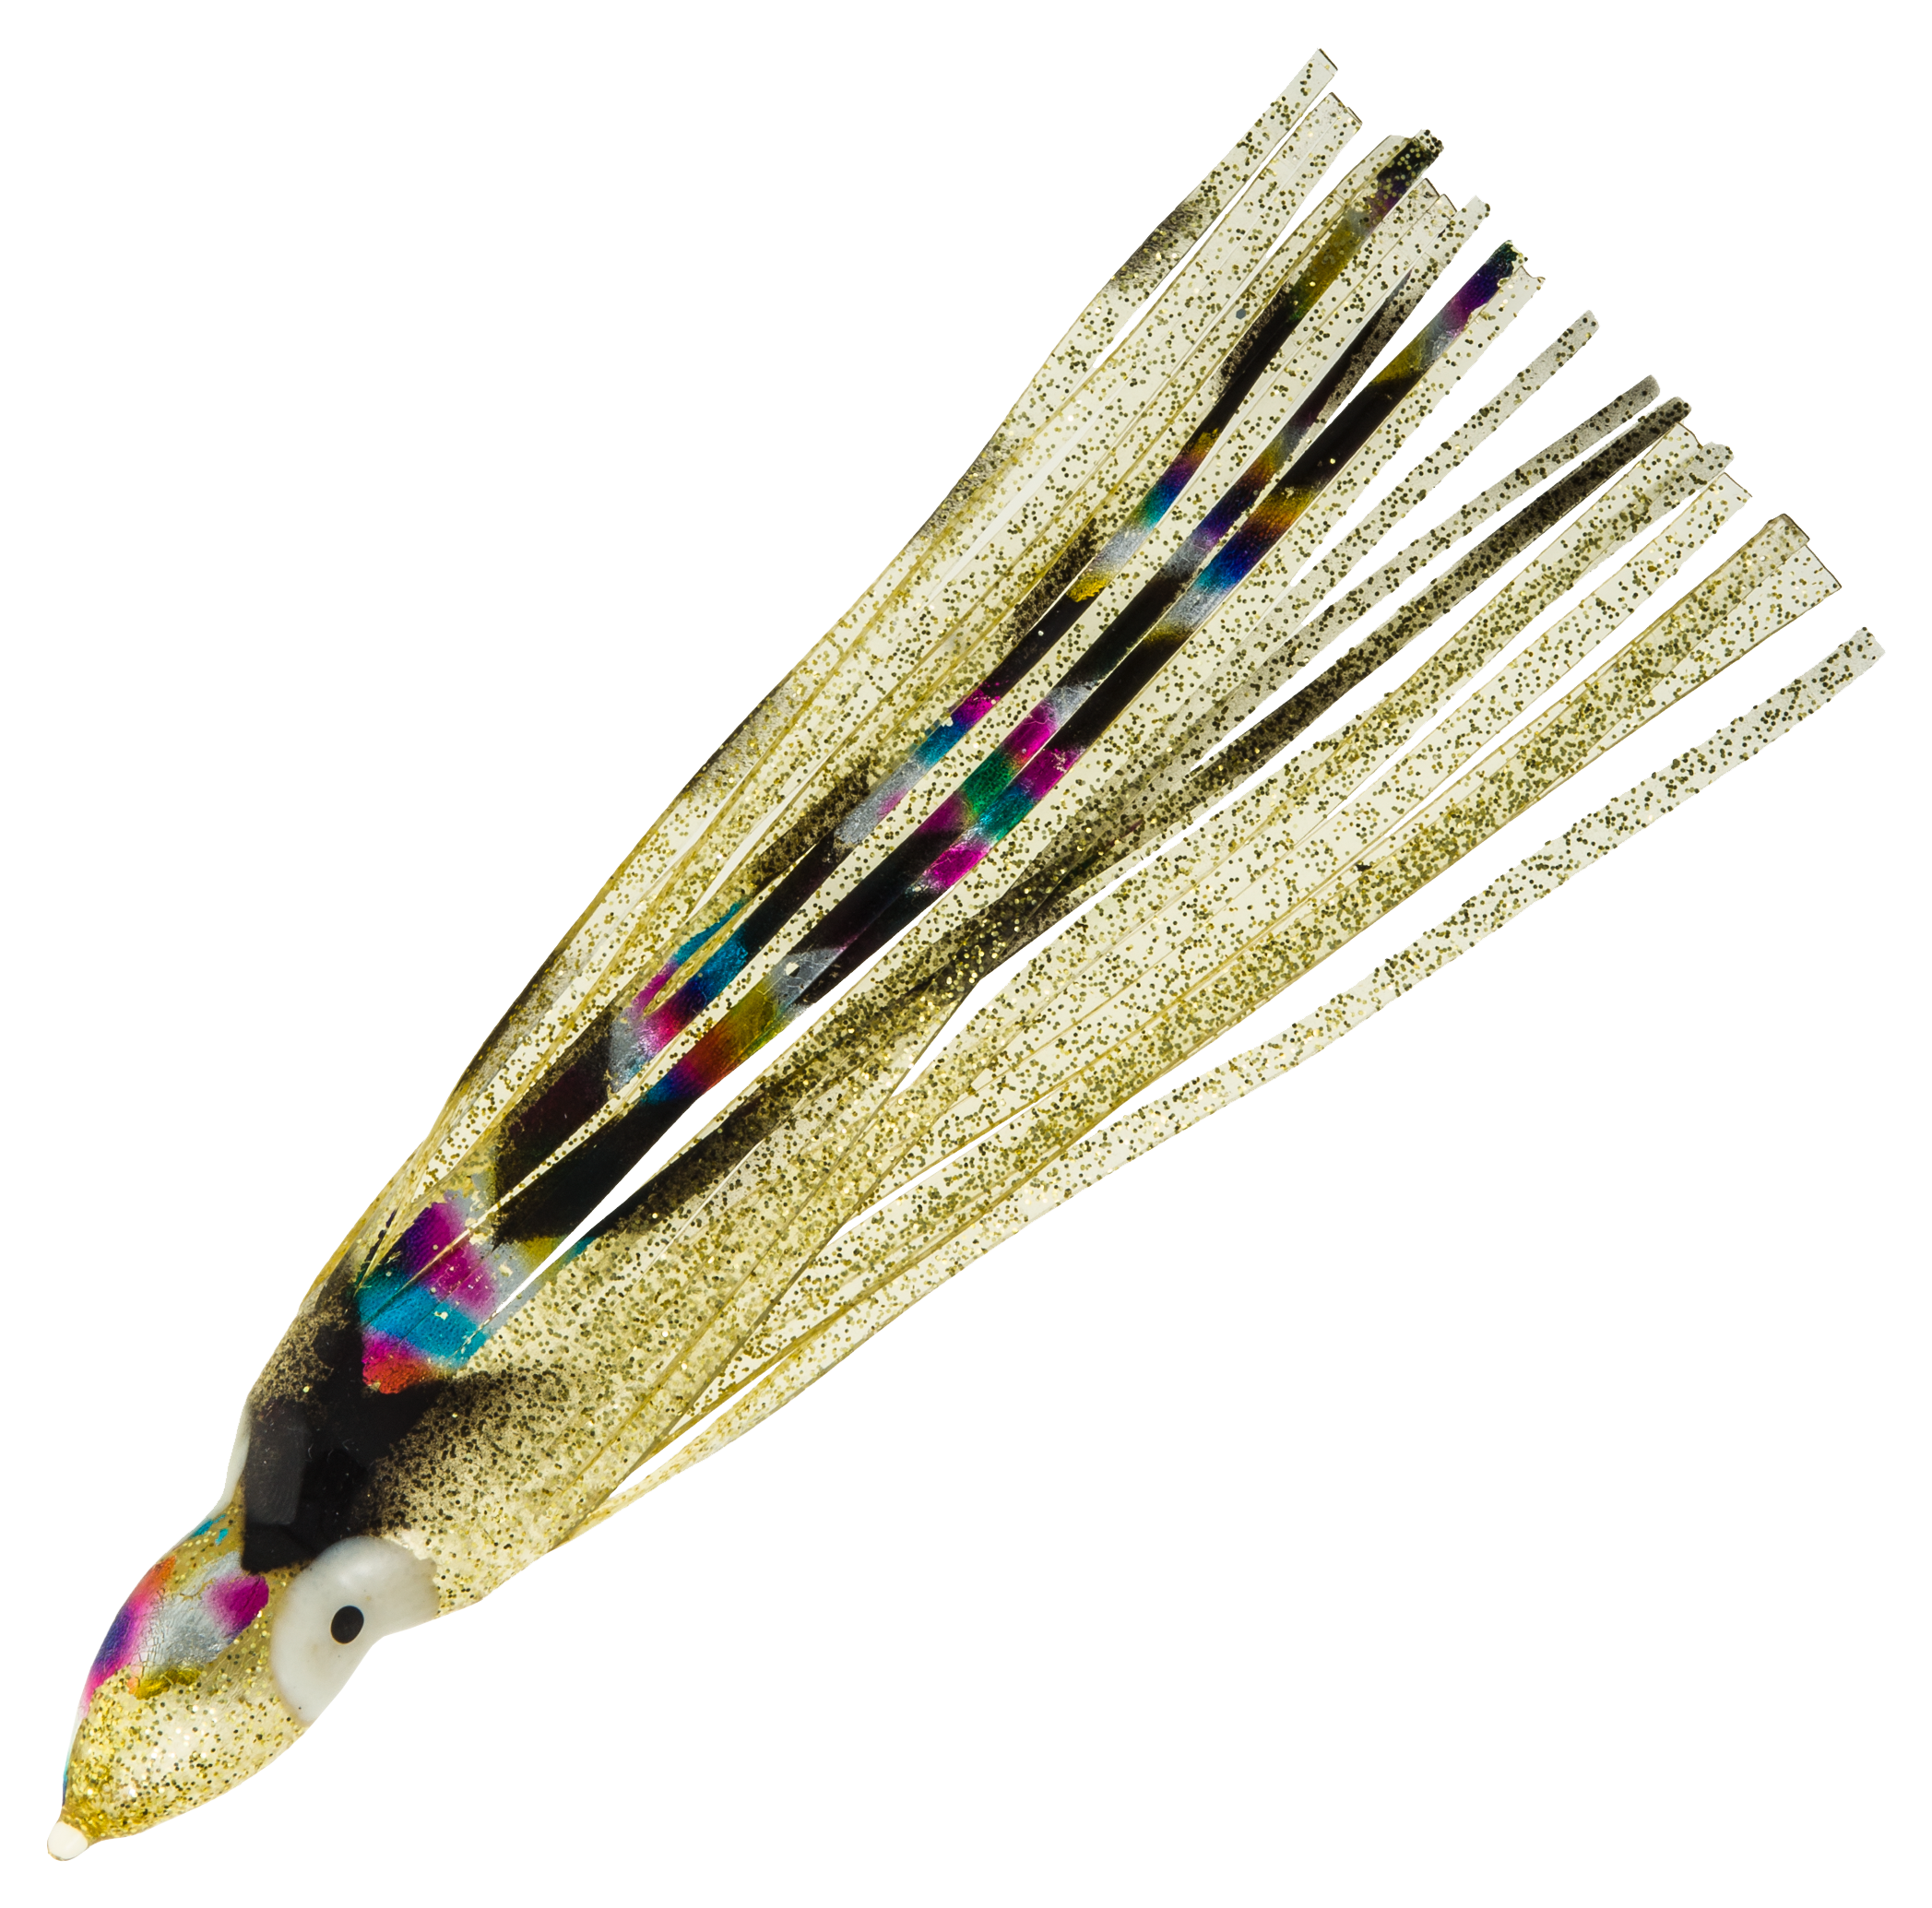 Offshore Angler Squid Skirts - 7-1/2' - Abalone Black Gold Glitter